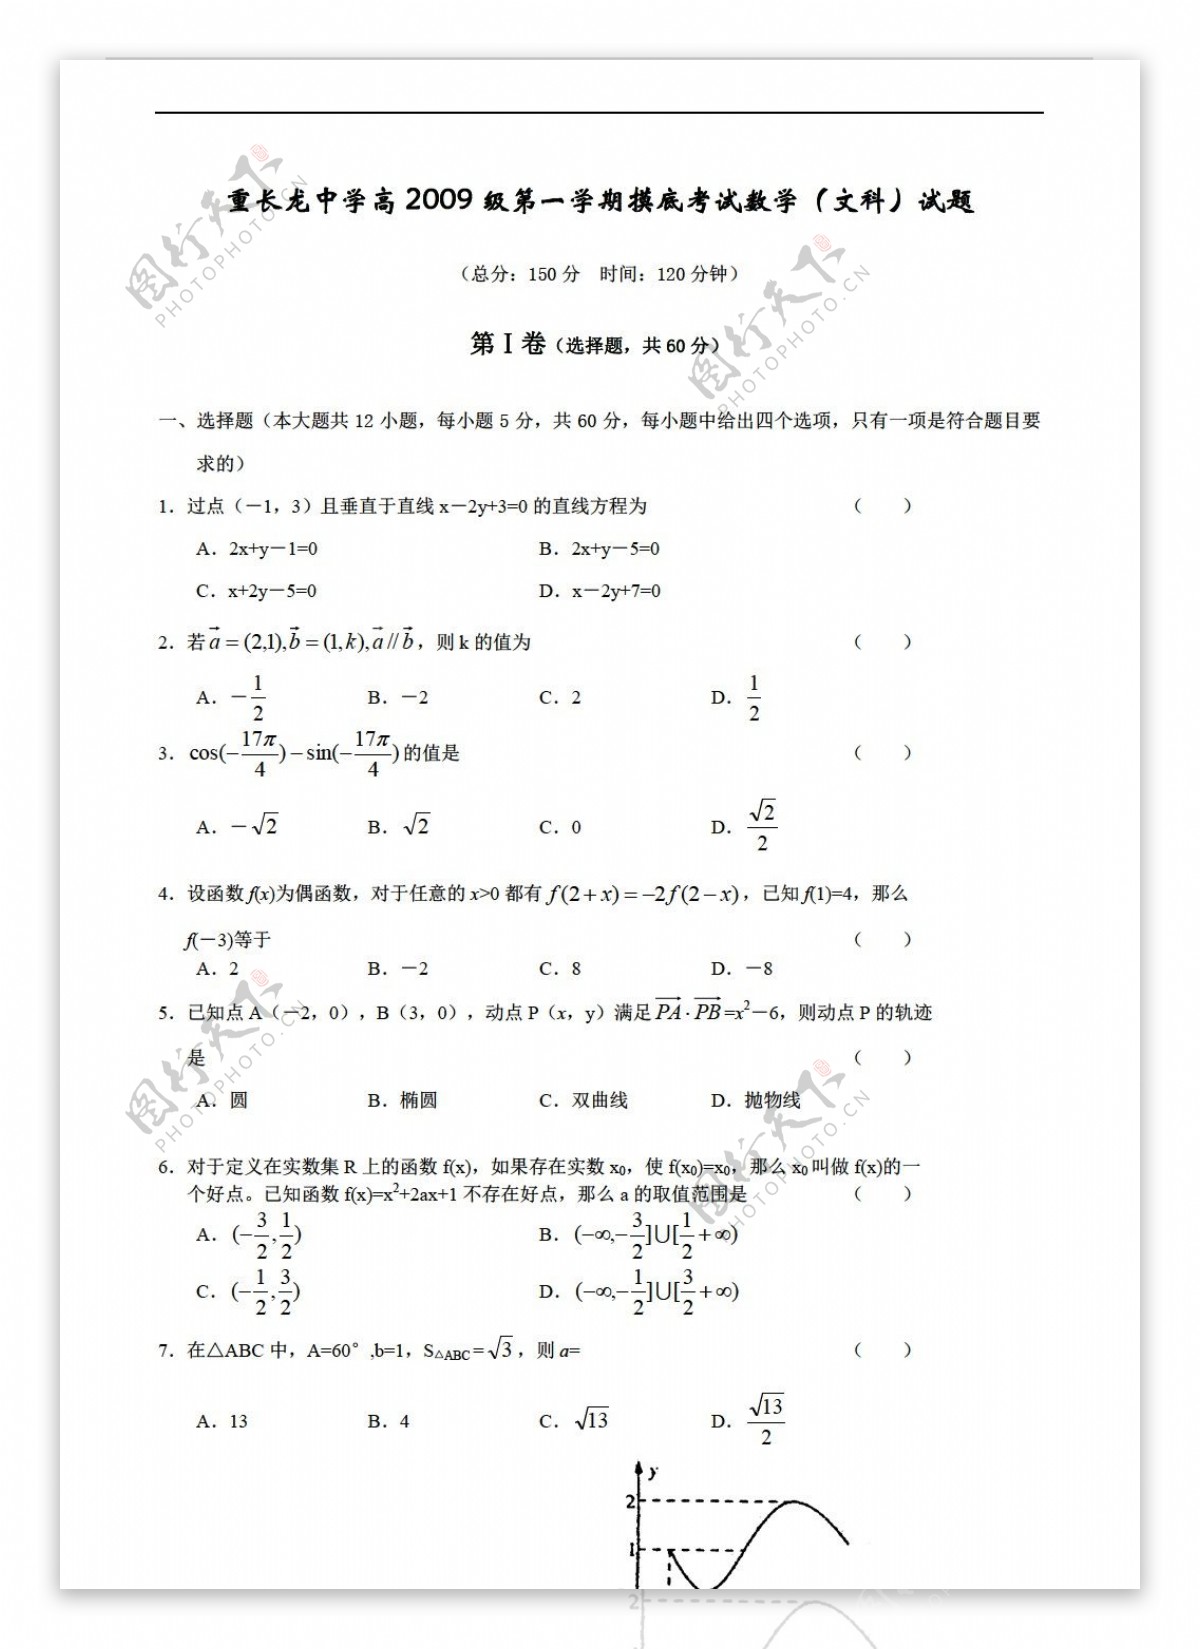 数学人教版重长龙中学高2009级第一学期摸底考试文科试题